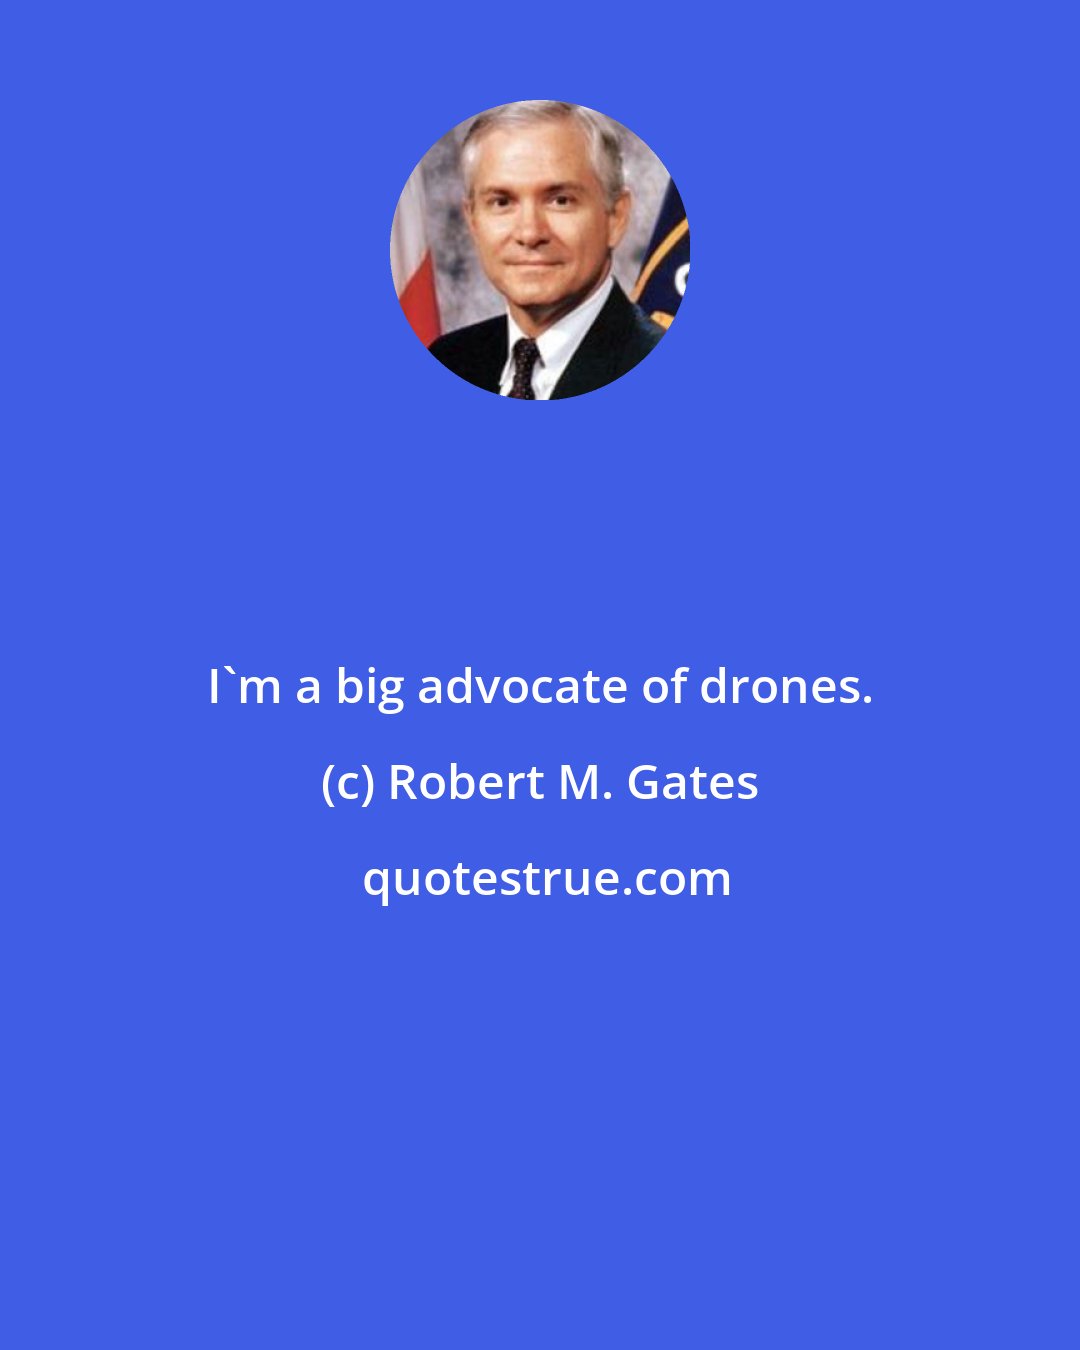 Robert M. Gates: I'm a big advocate of drones.